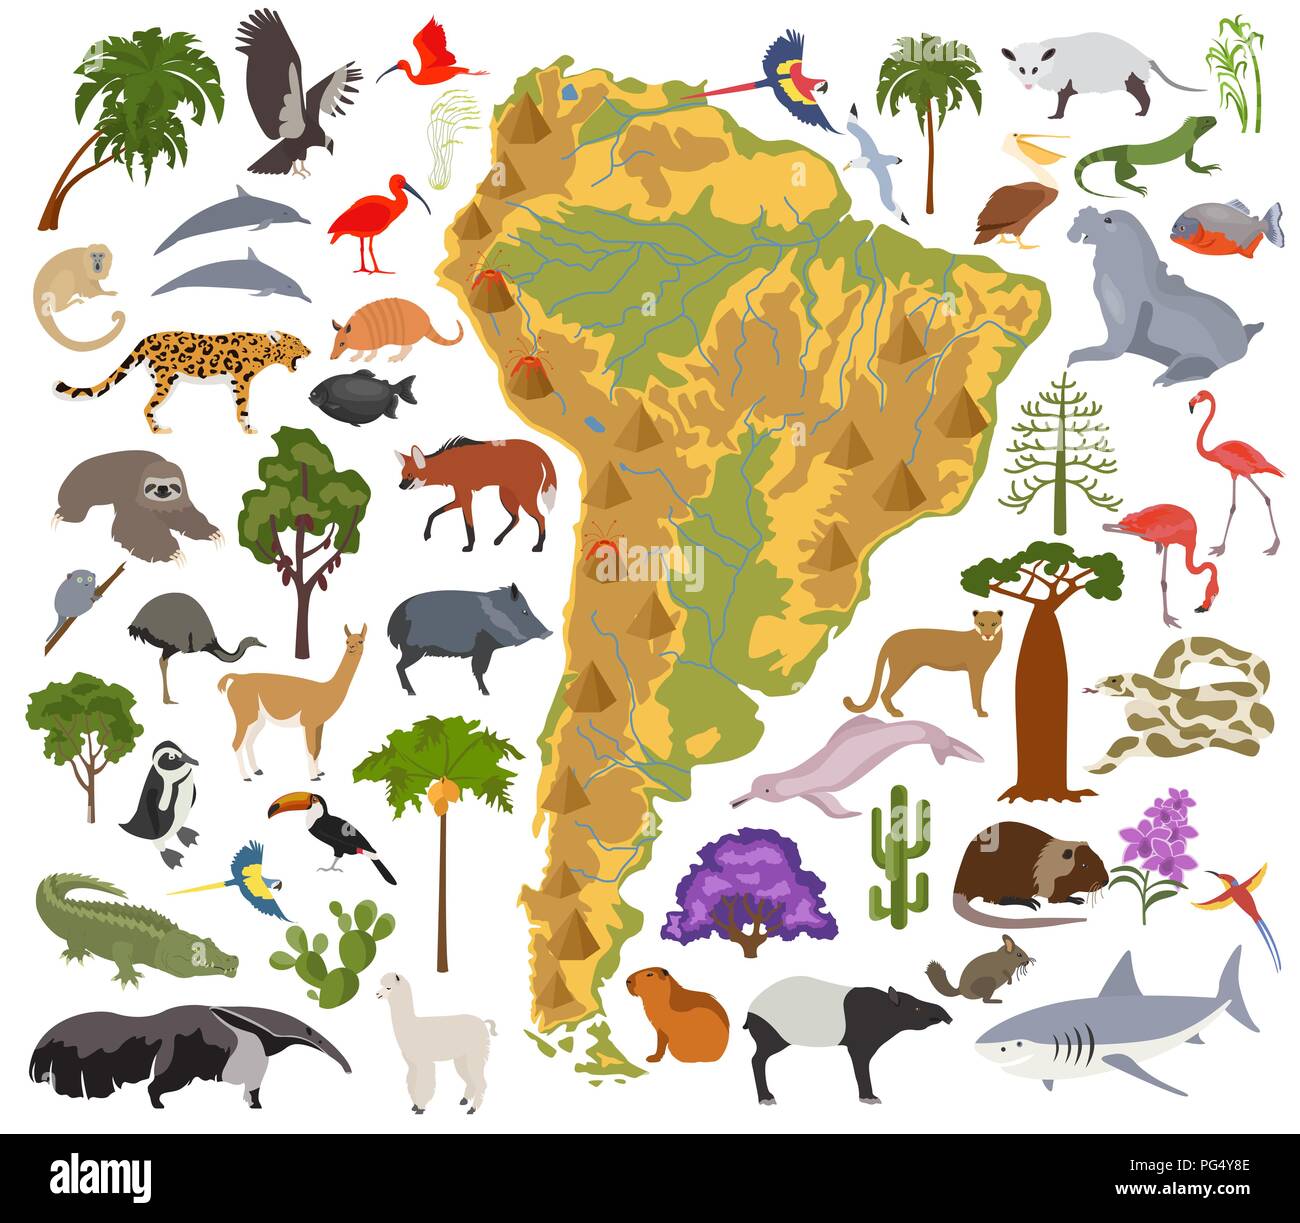 América del Sur mapa de flora y fauna, elementos planos. Animales, aves y vida marina grande. Construya su geografía infografía colección. Vector illustrati Ilustración del Vector